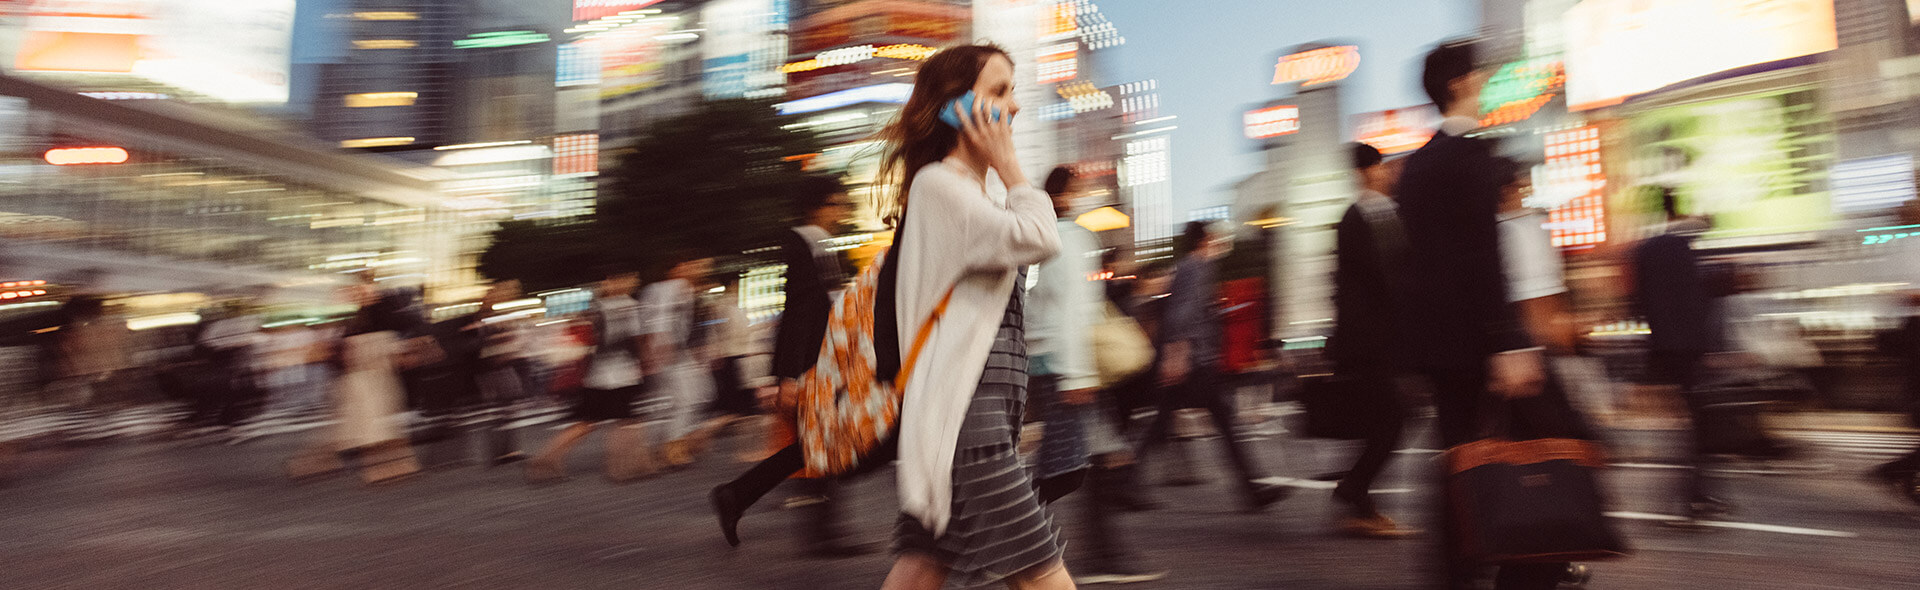 Frau am Telefon überquert mit vielen anderen Menschen die Straße einer Großstadt